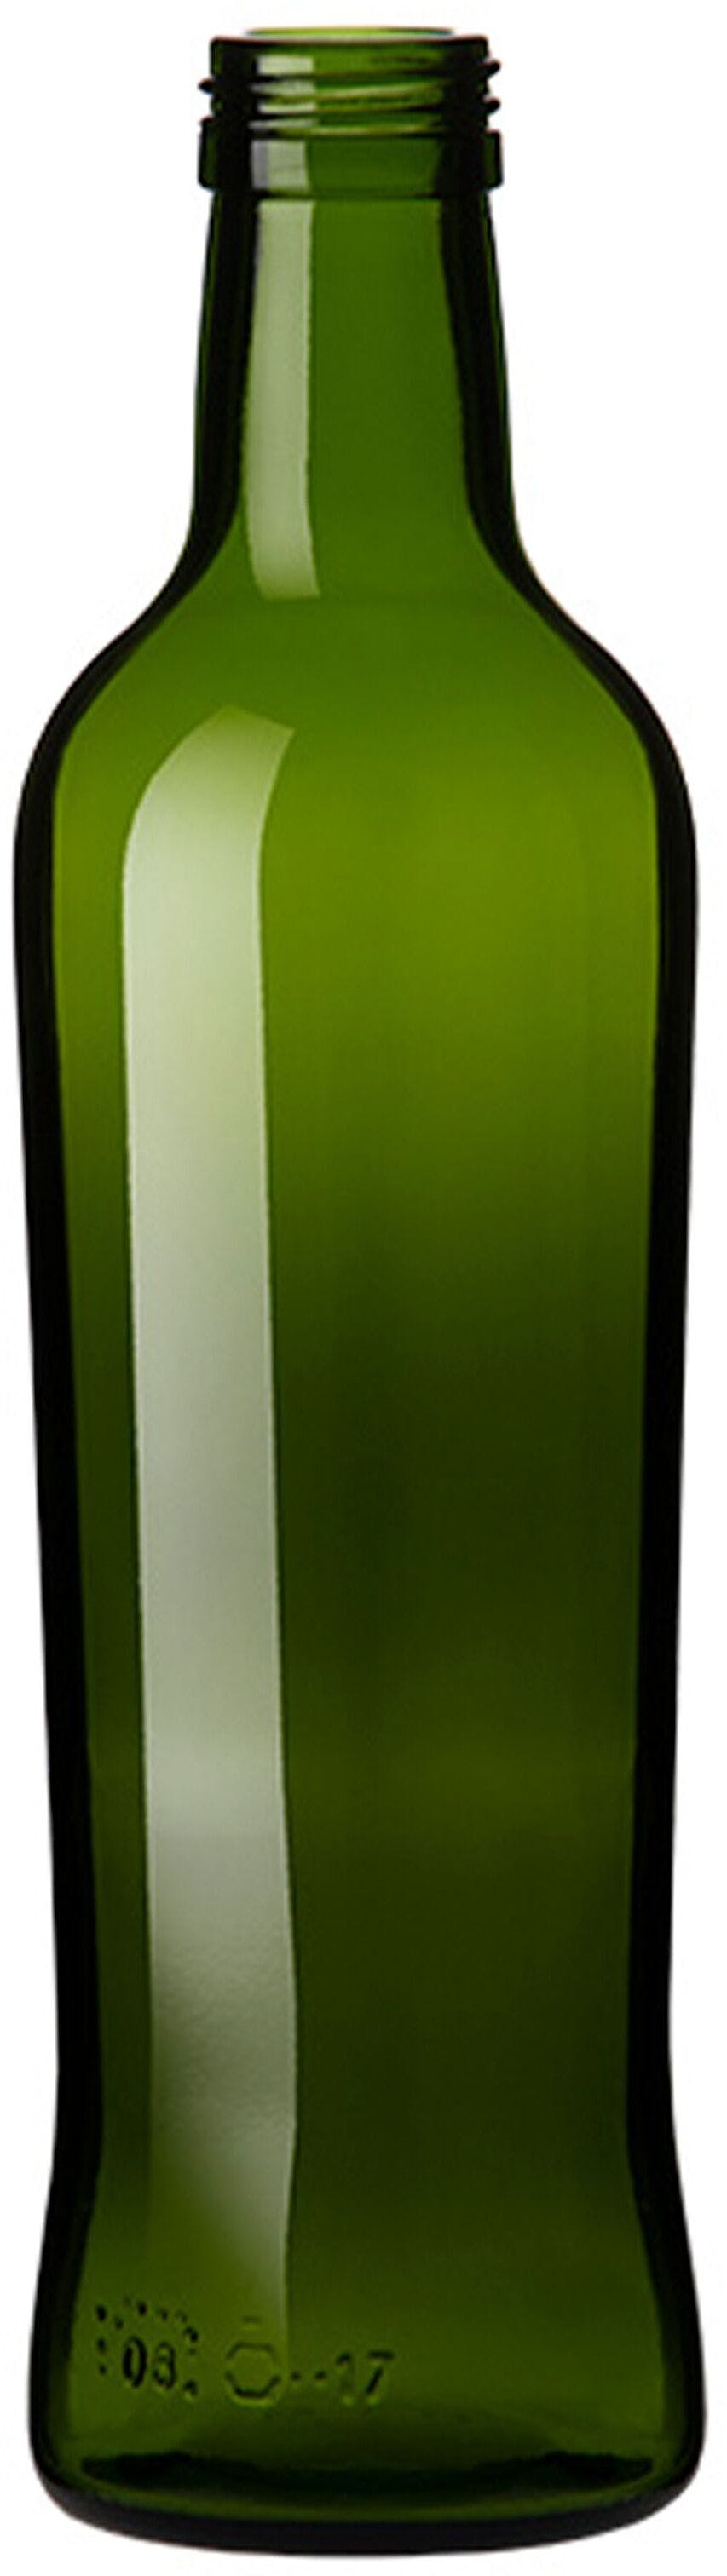 Botella OLIO  500 ml BG-Rosca